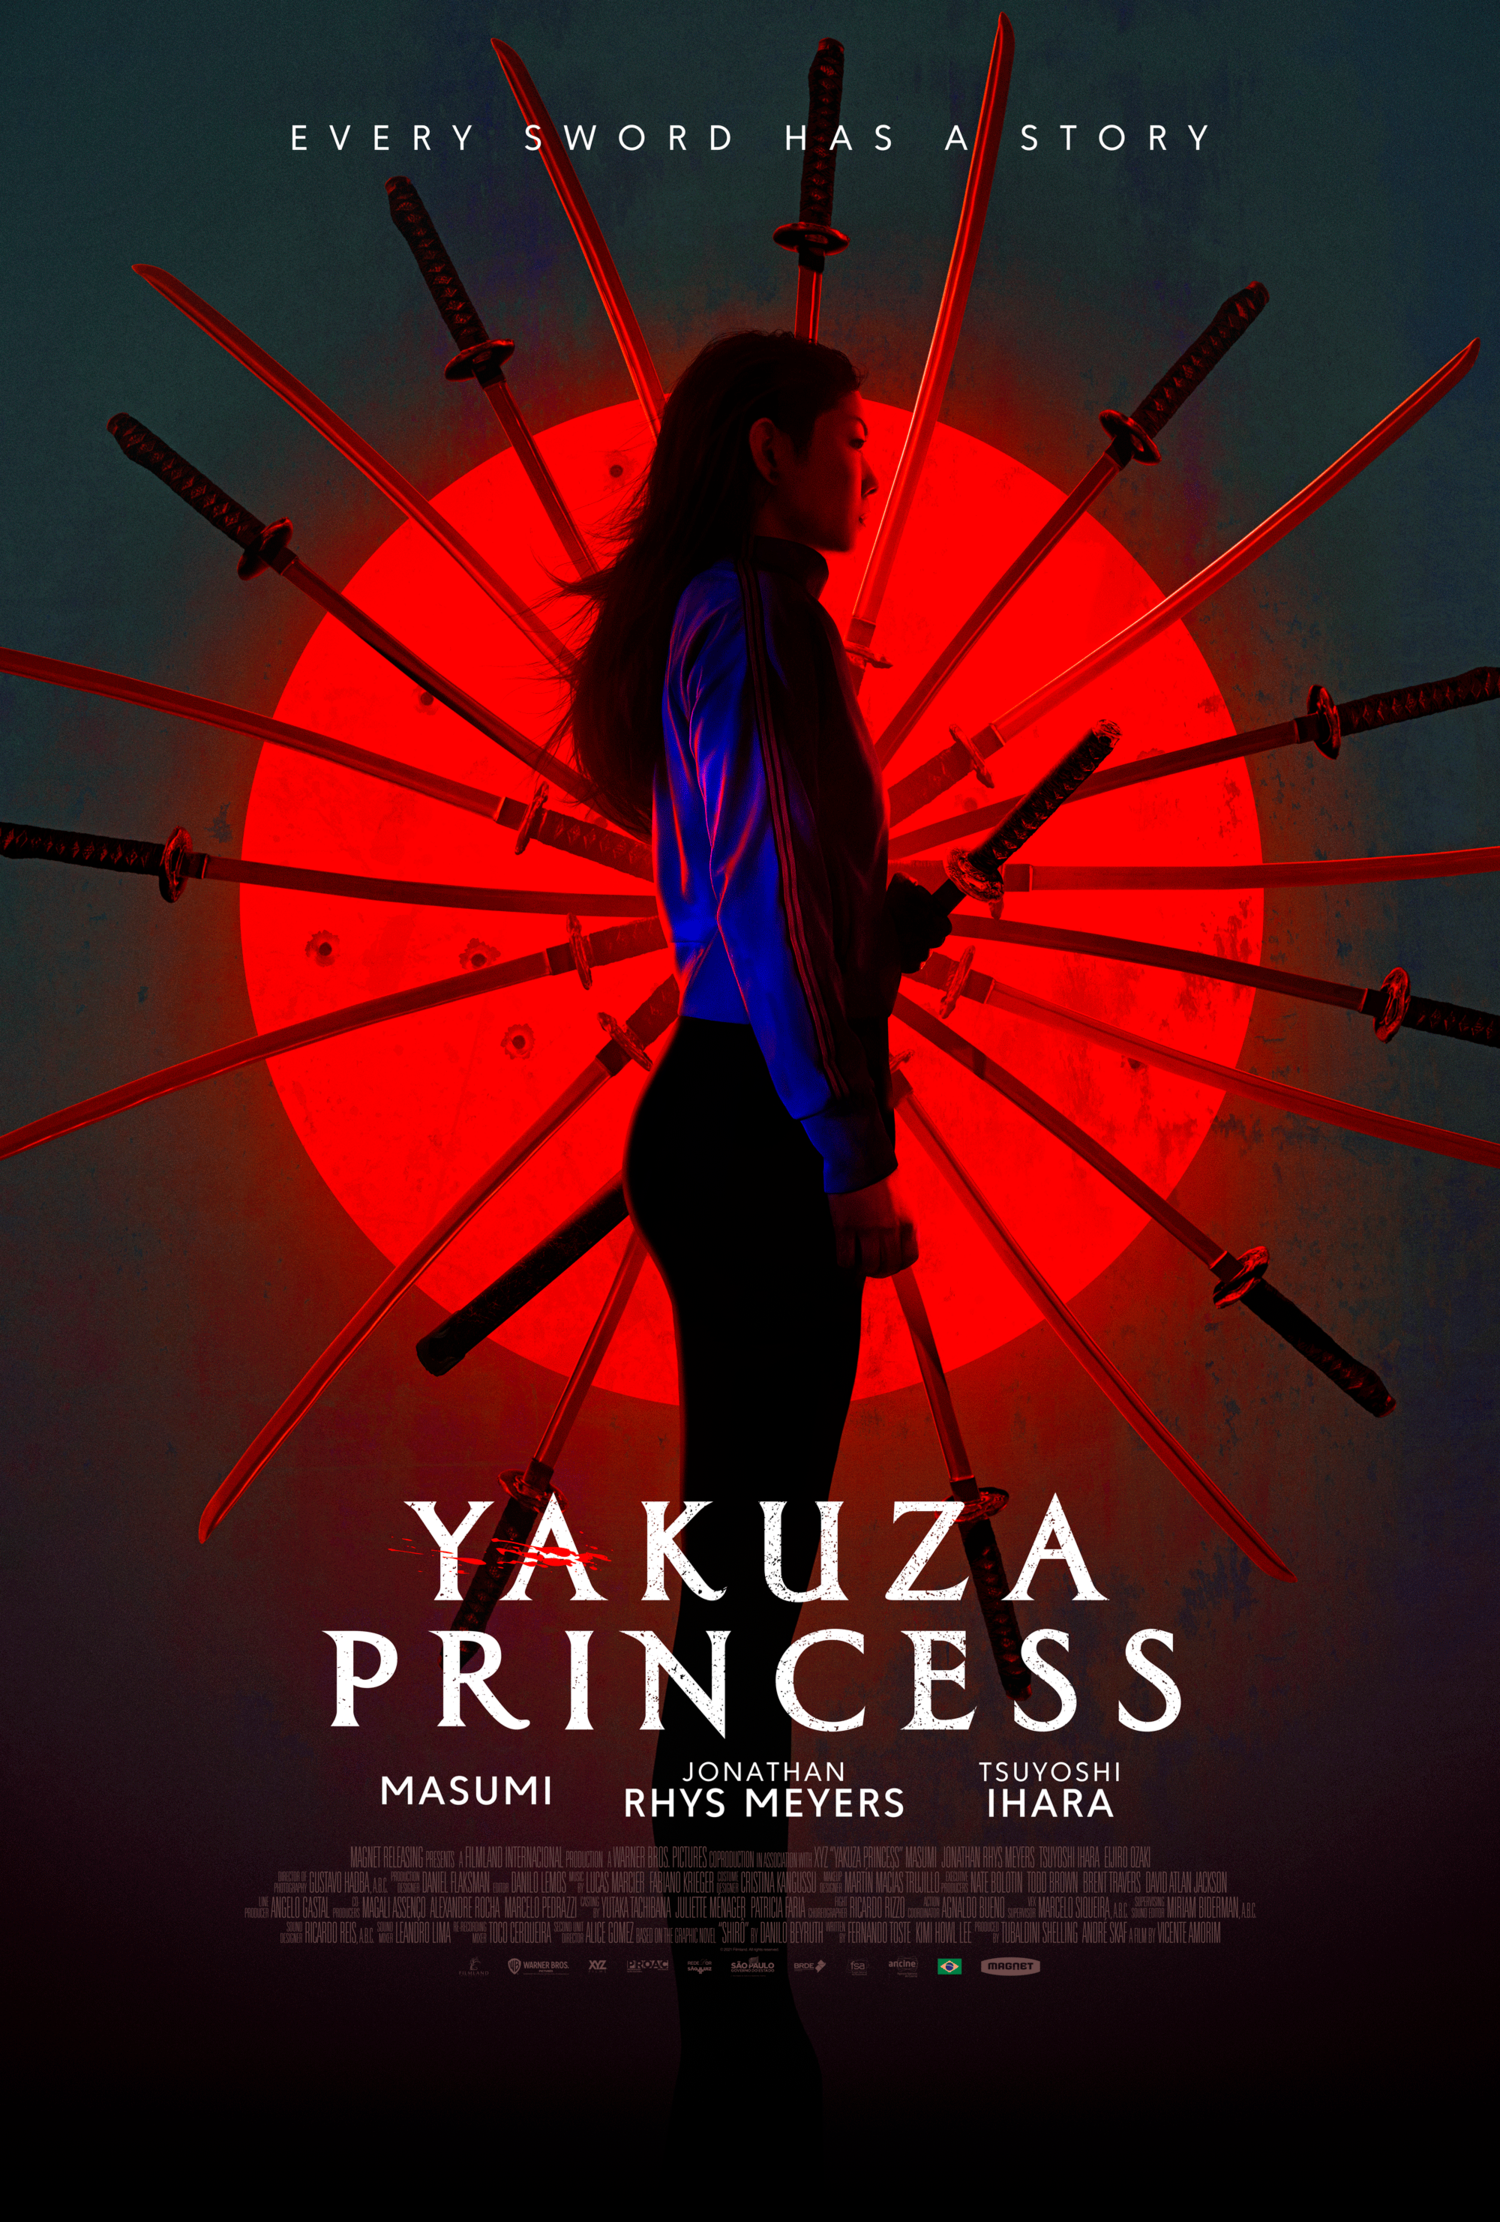 Masumi in 'Yakuza Princess'